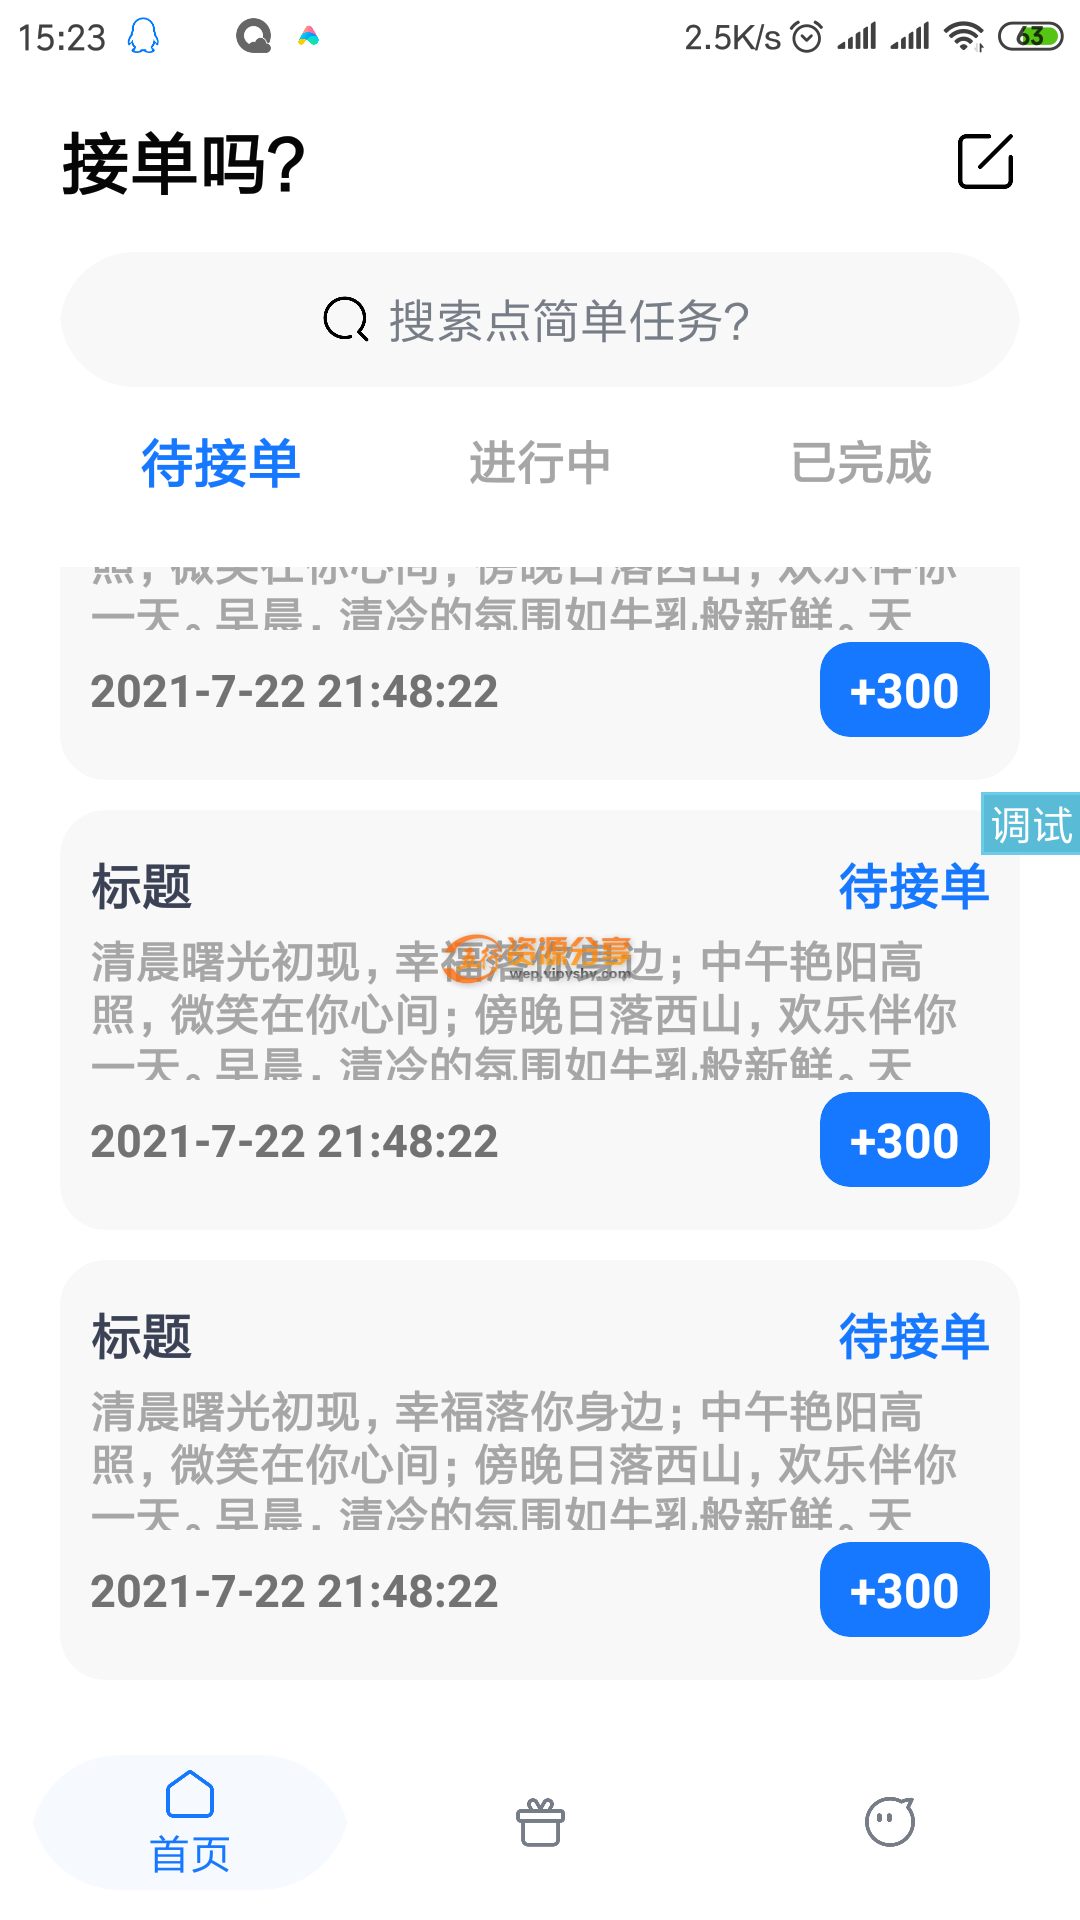 【iApp源码】一款接单发单+商城UI好看源码-图片